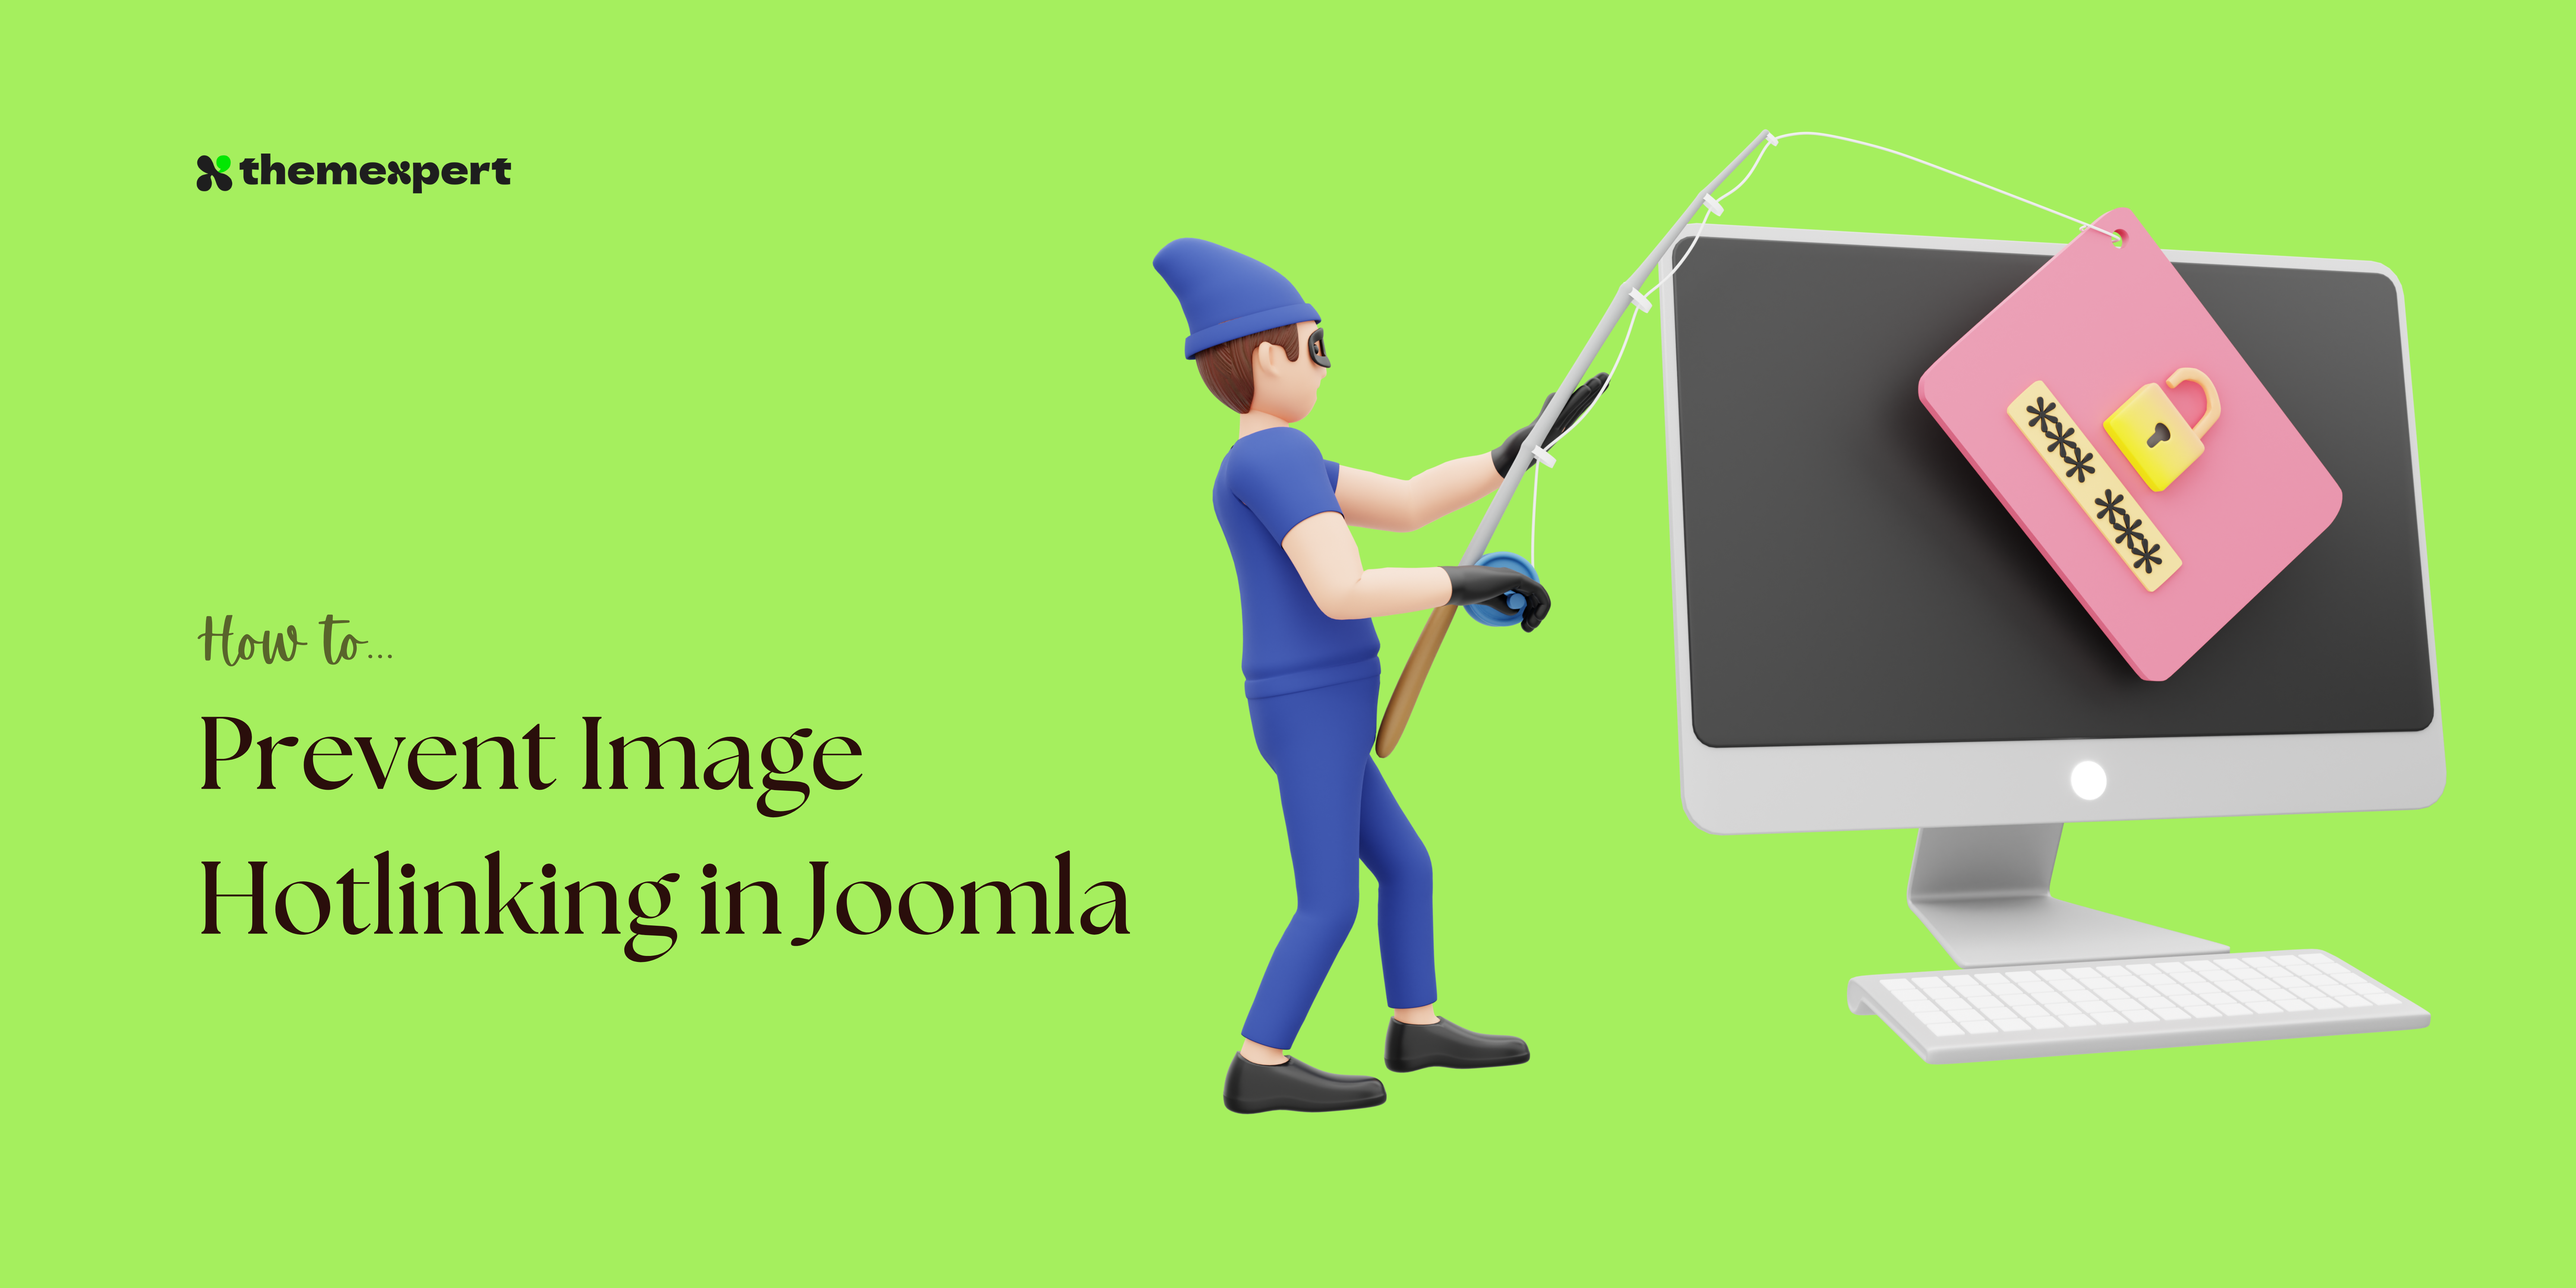 Ways to prevent image hotlinking in Joomla